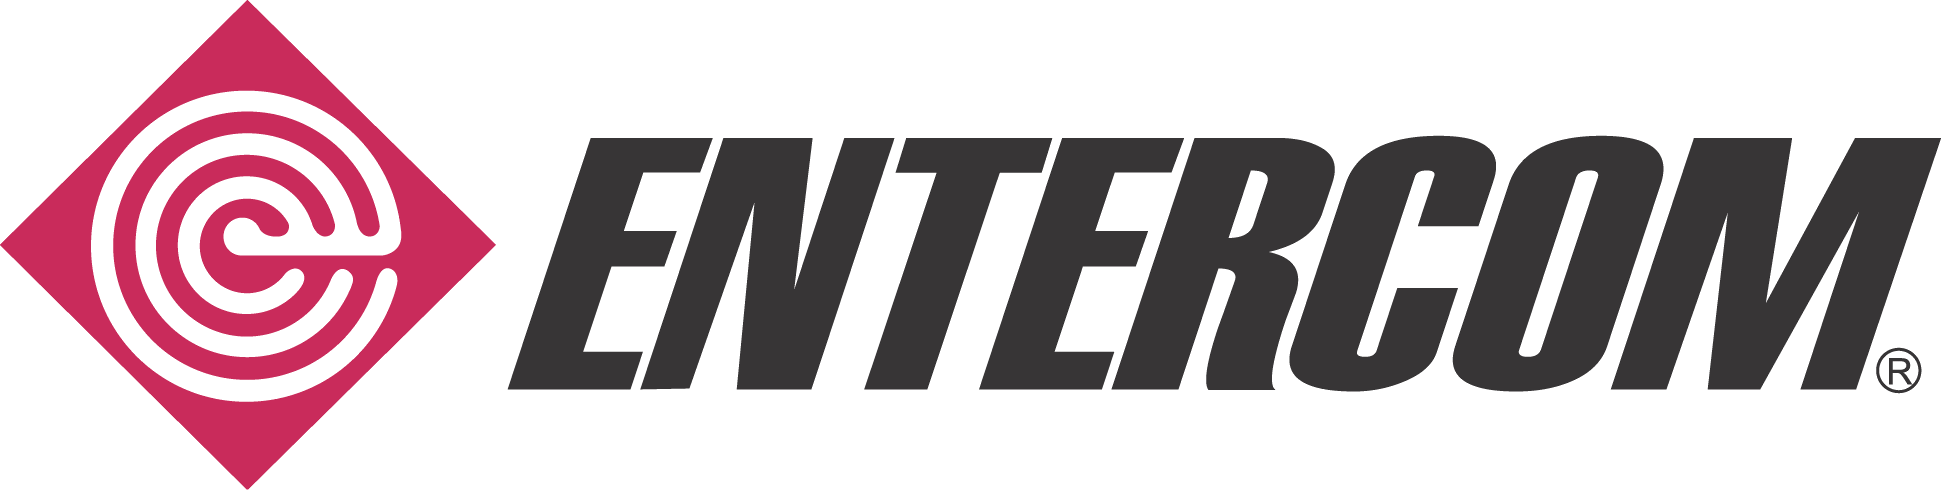 entercom-logo.png